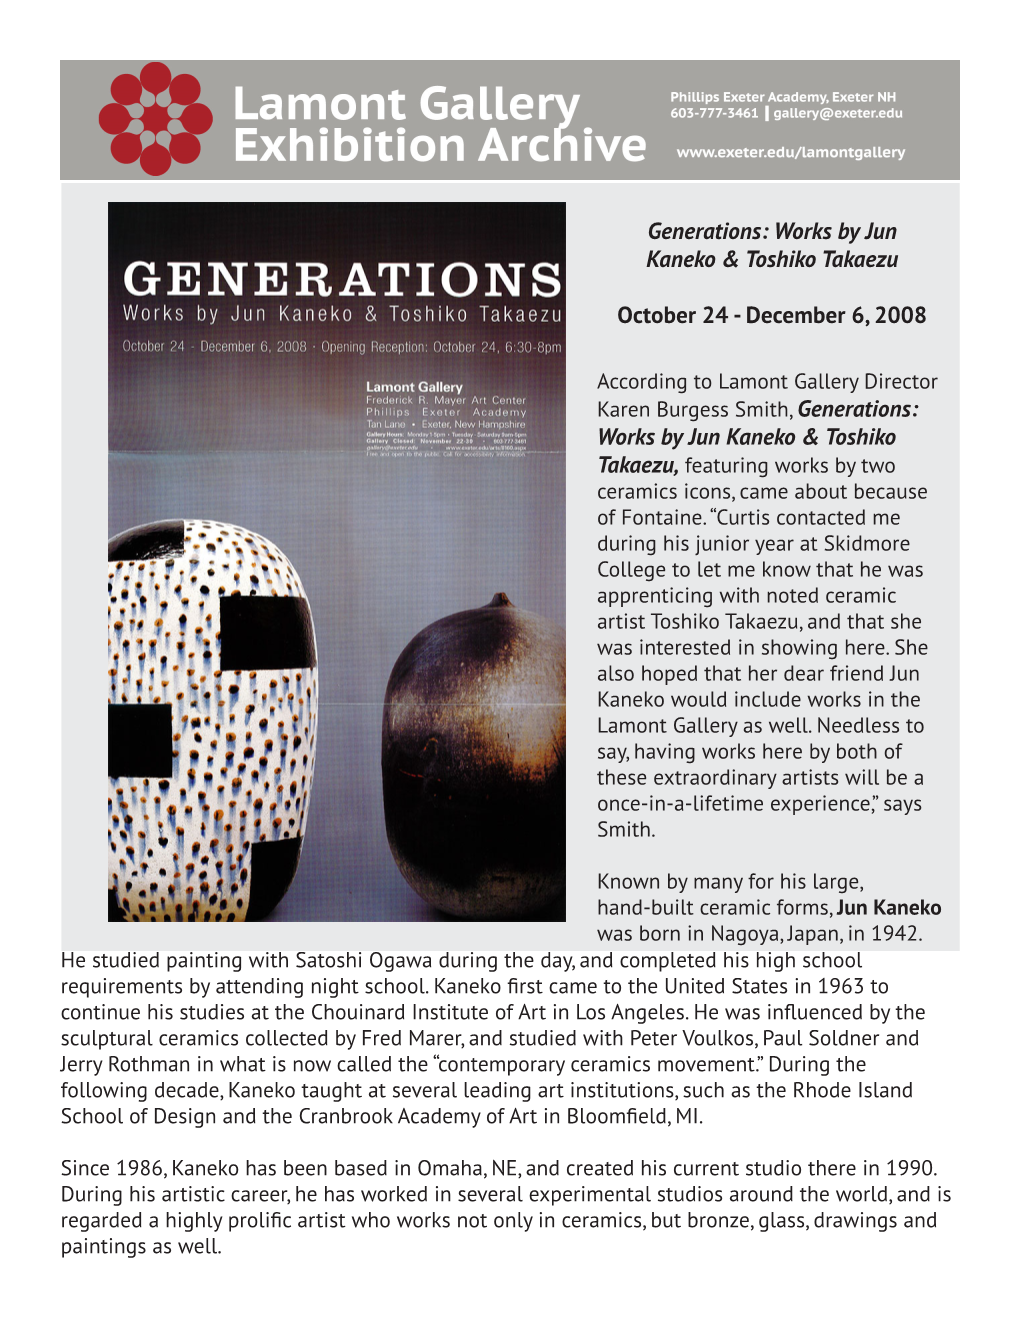 Generations: Works by Jun Kaneko & Toshiko Takaezu